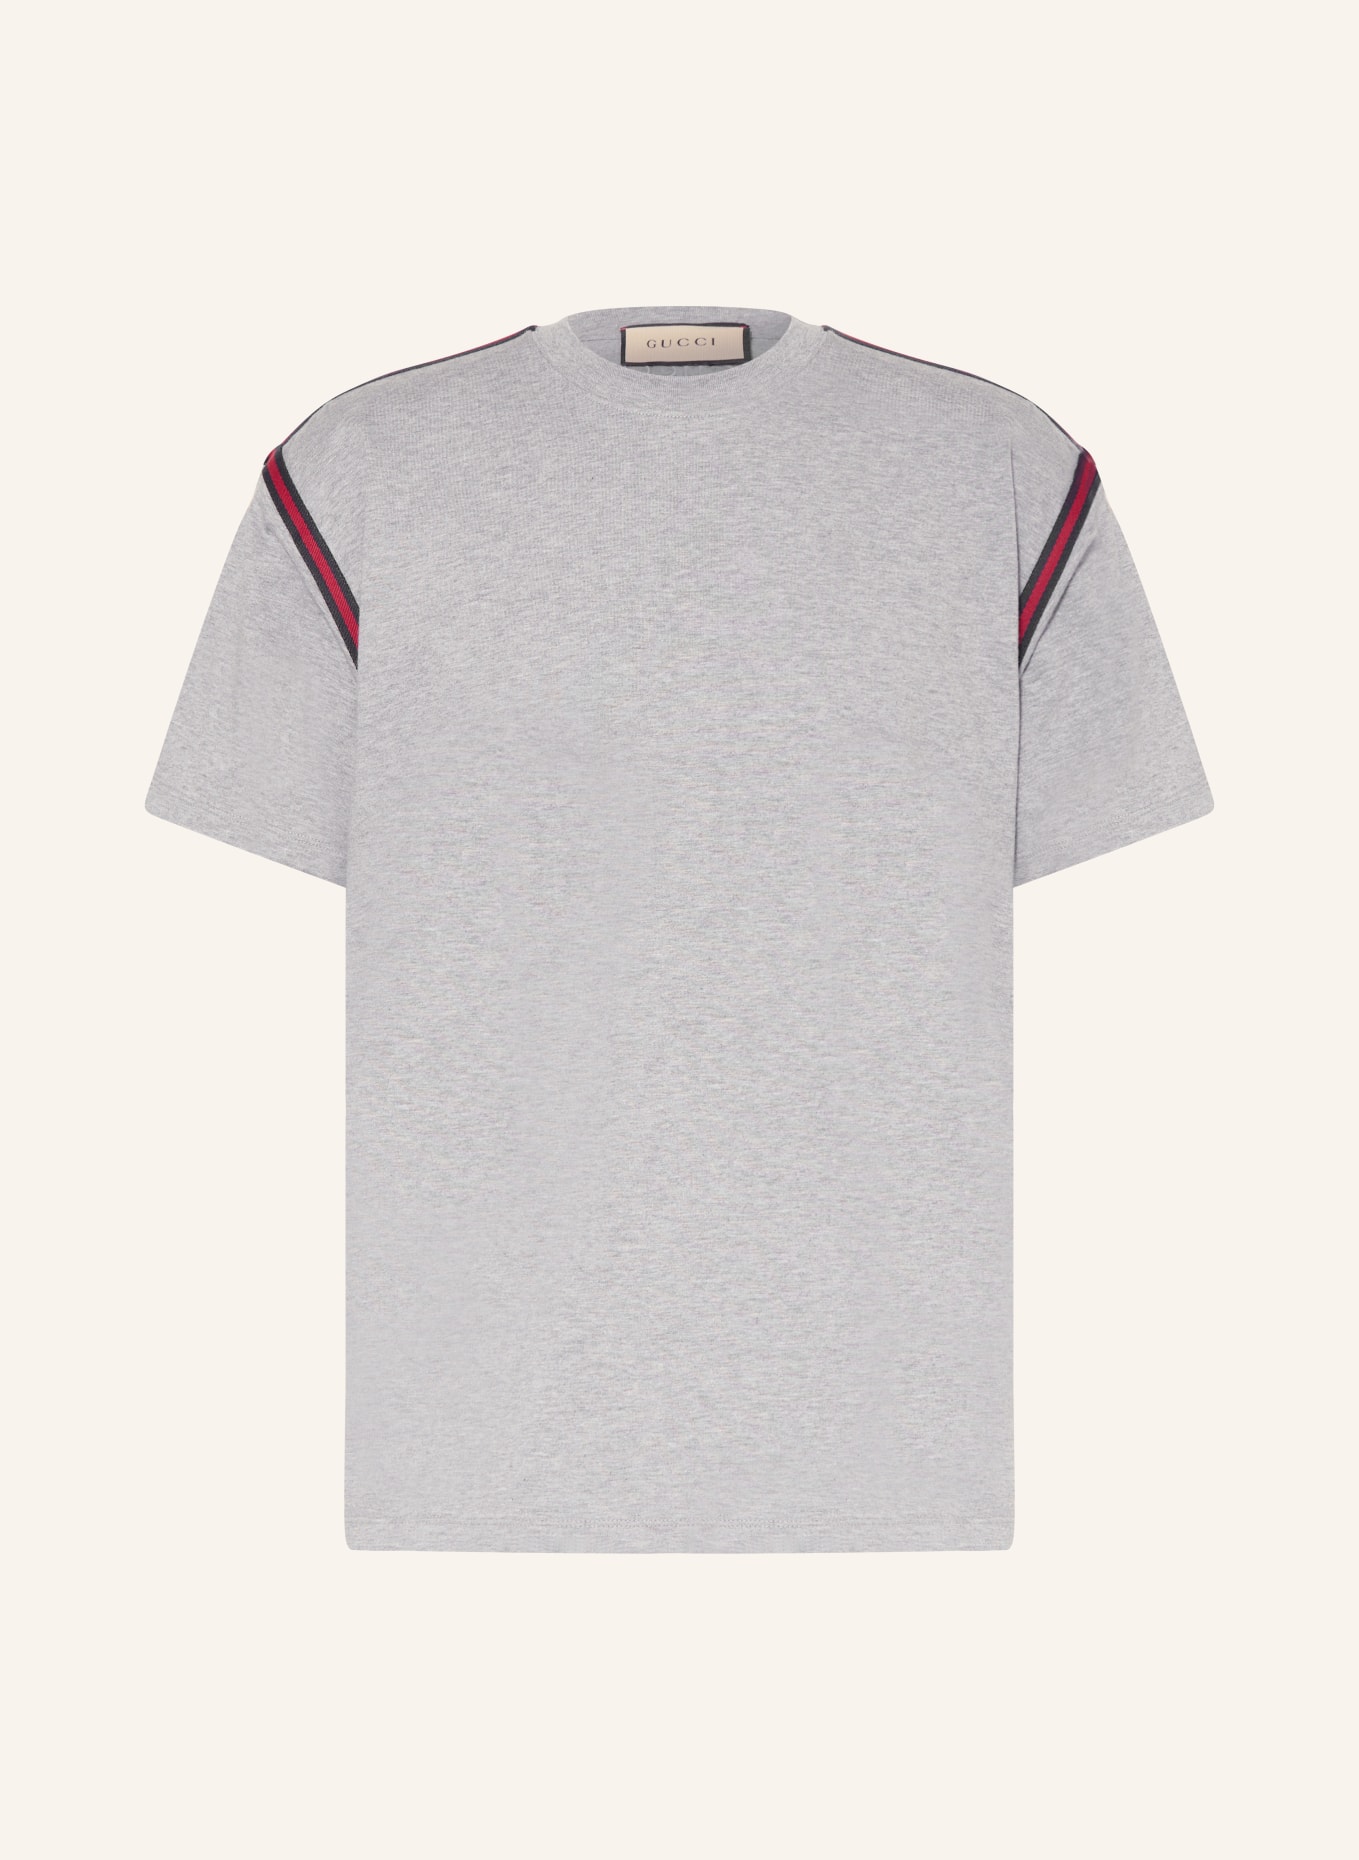 GUCCI T-Shirt, Farbe: GRAU (Bild 1)